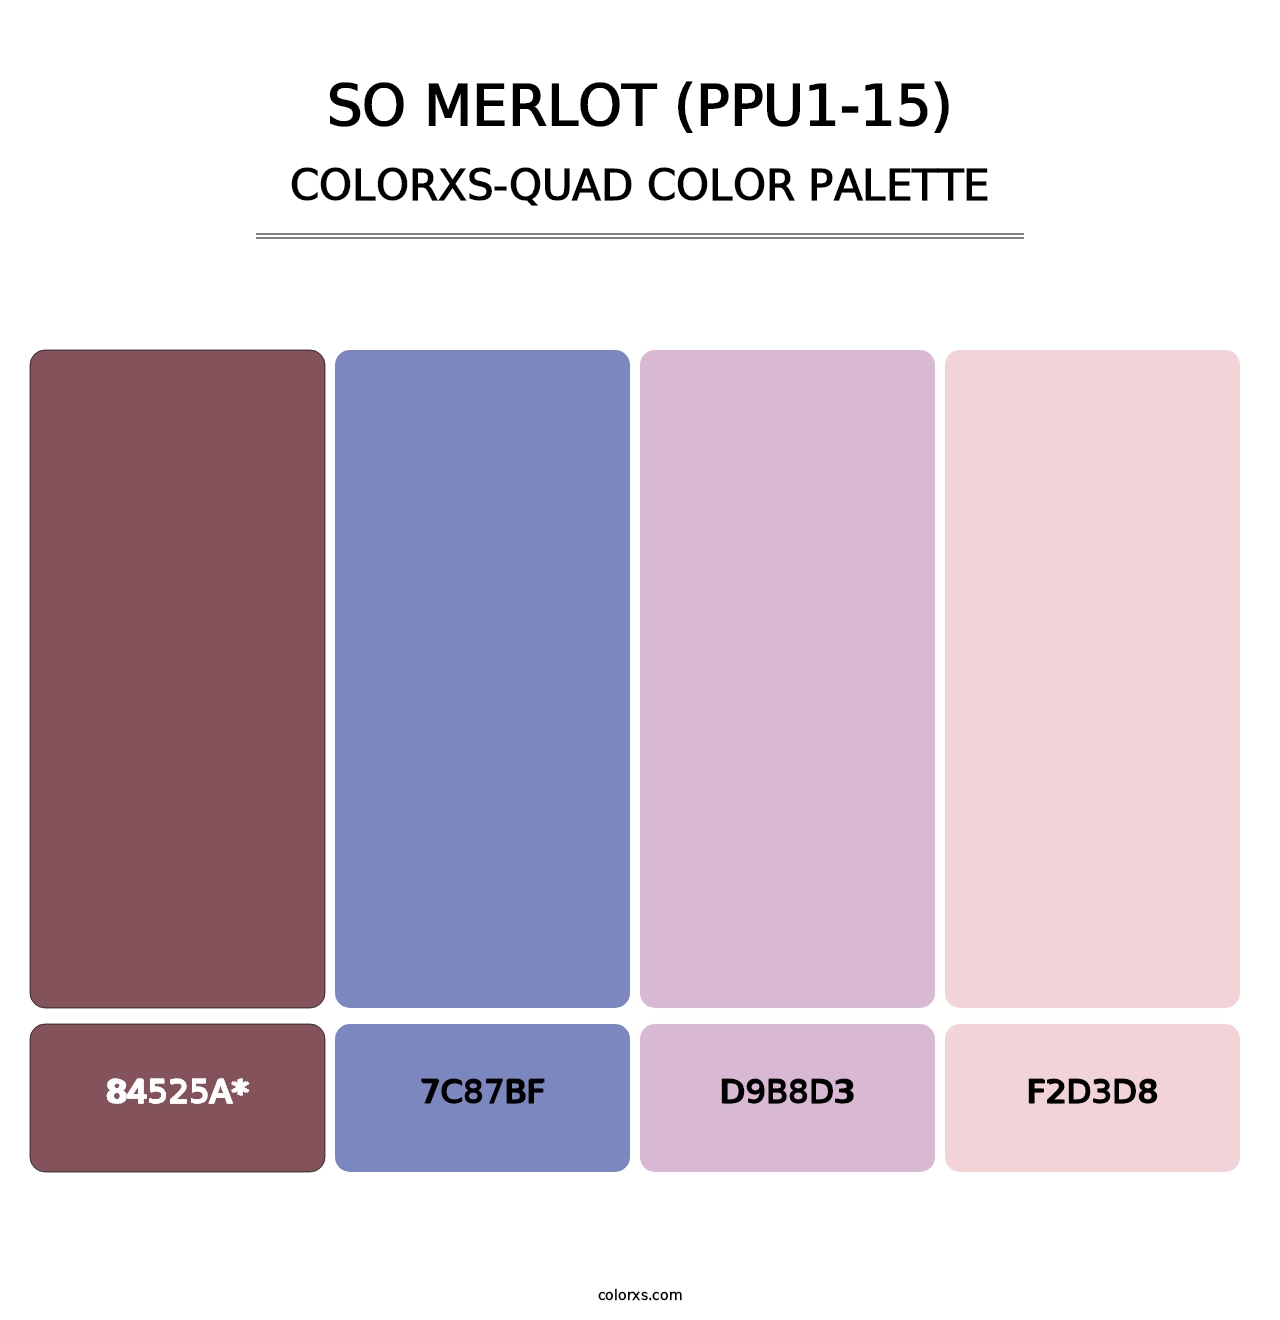 So Merlot (PPU1-15) - Colorxs Quad Palette